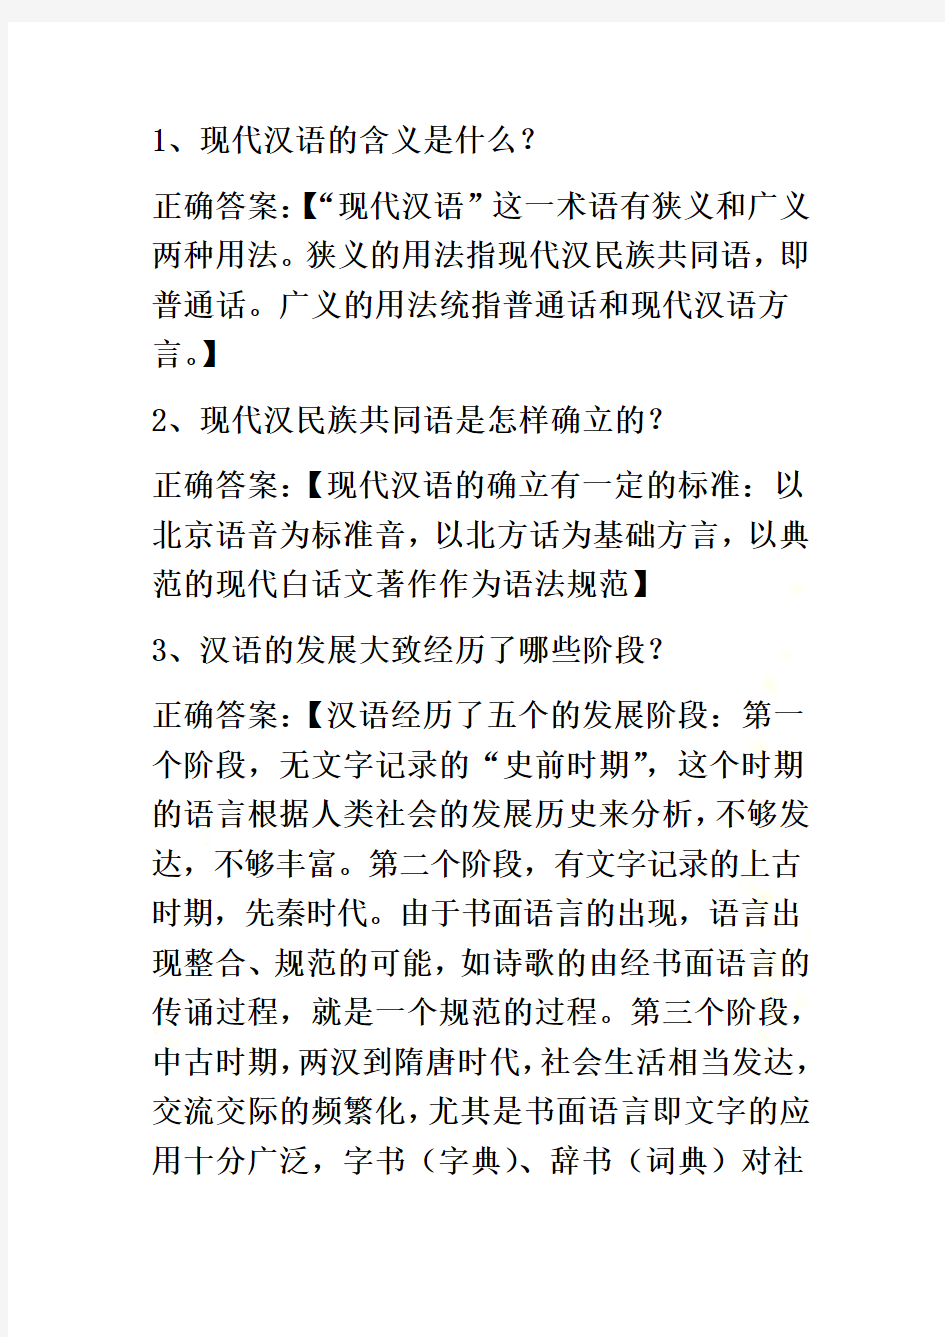 现代汉语经典习题附答案--101道